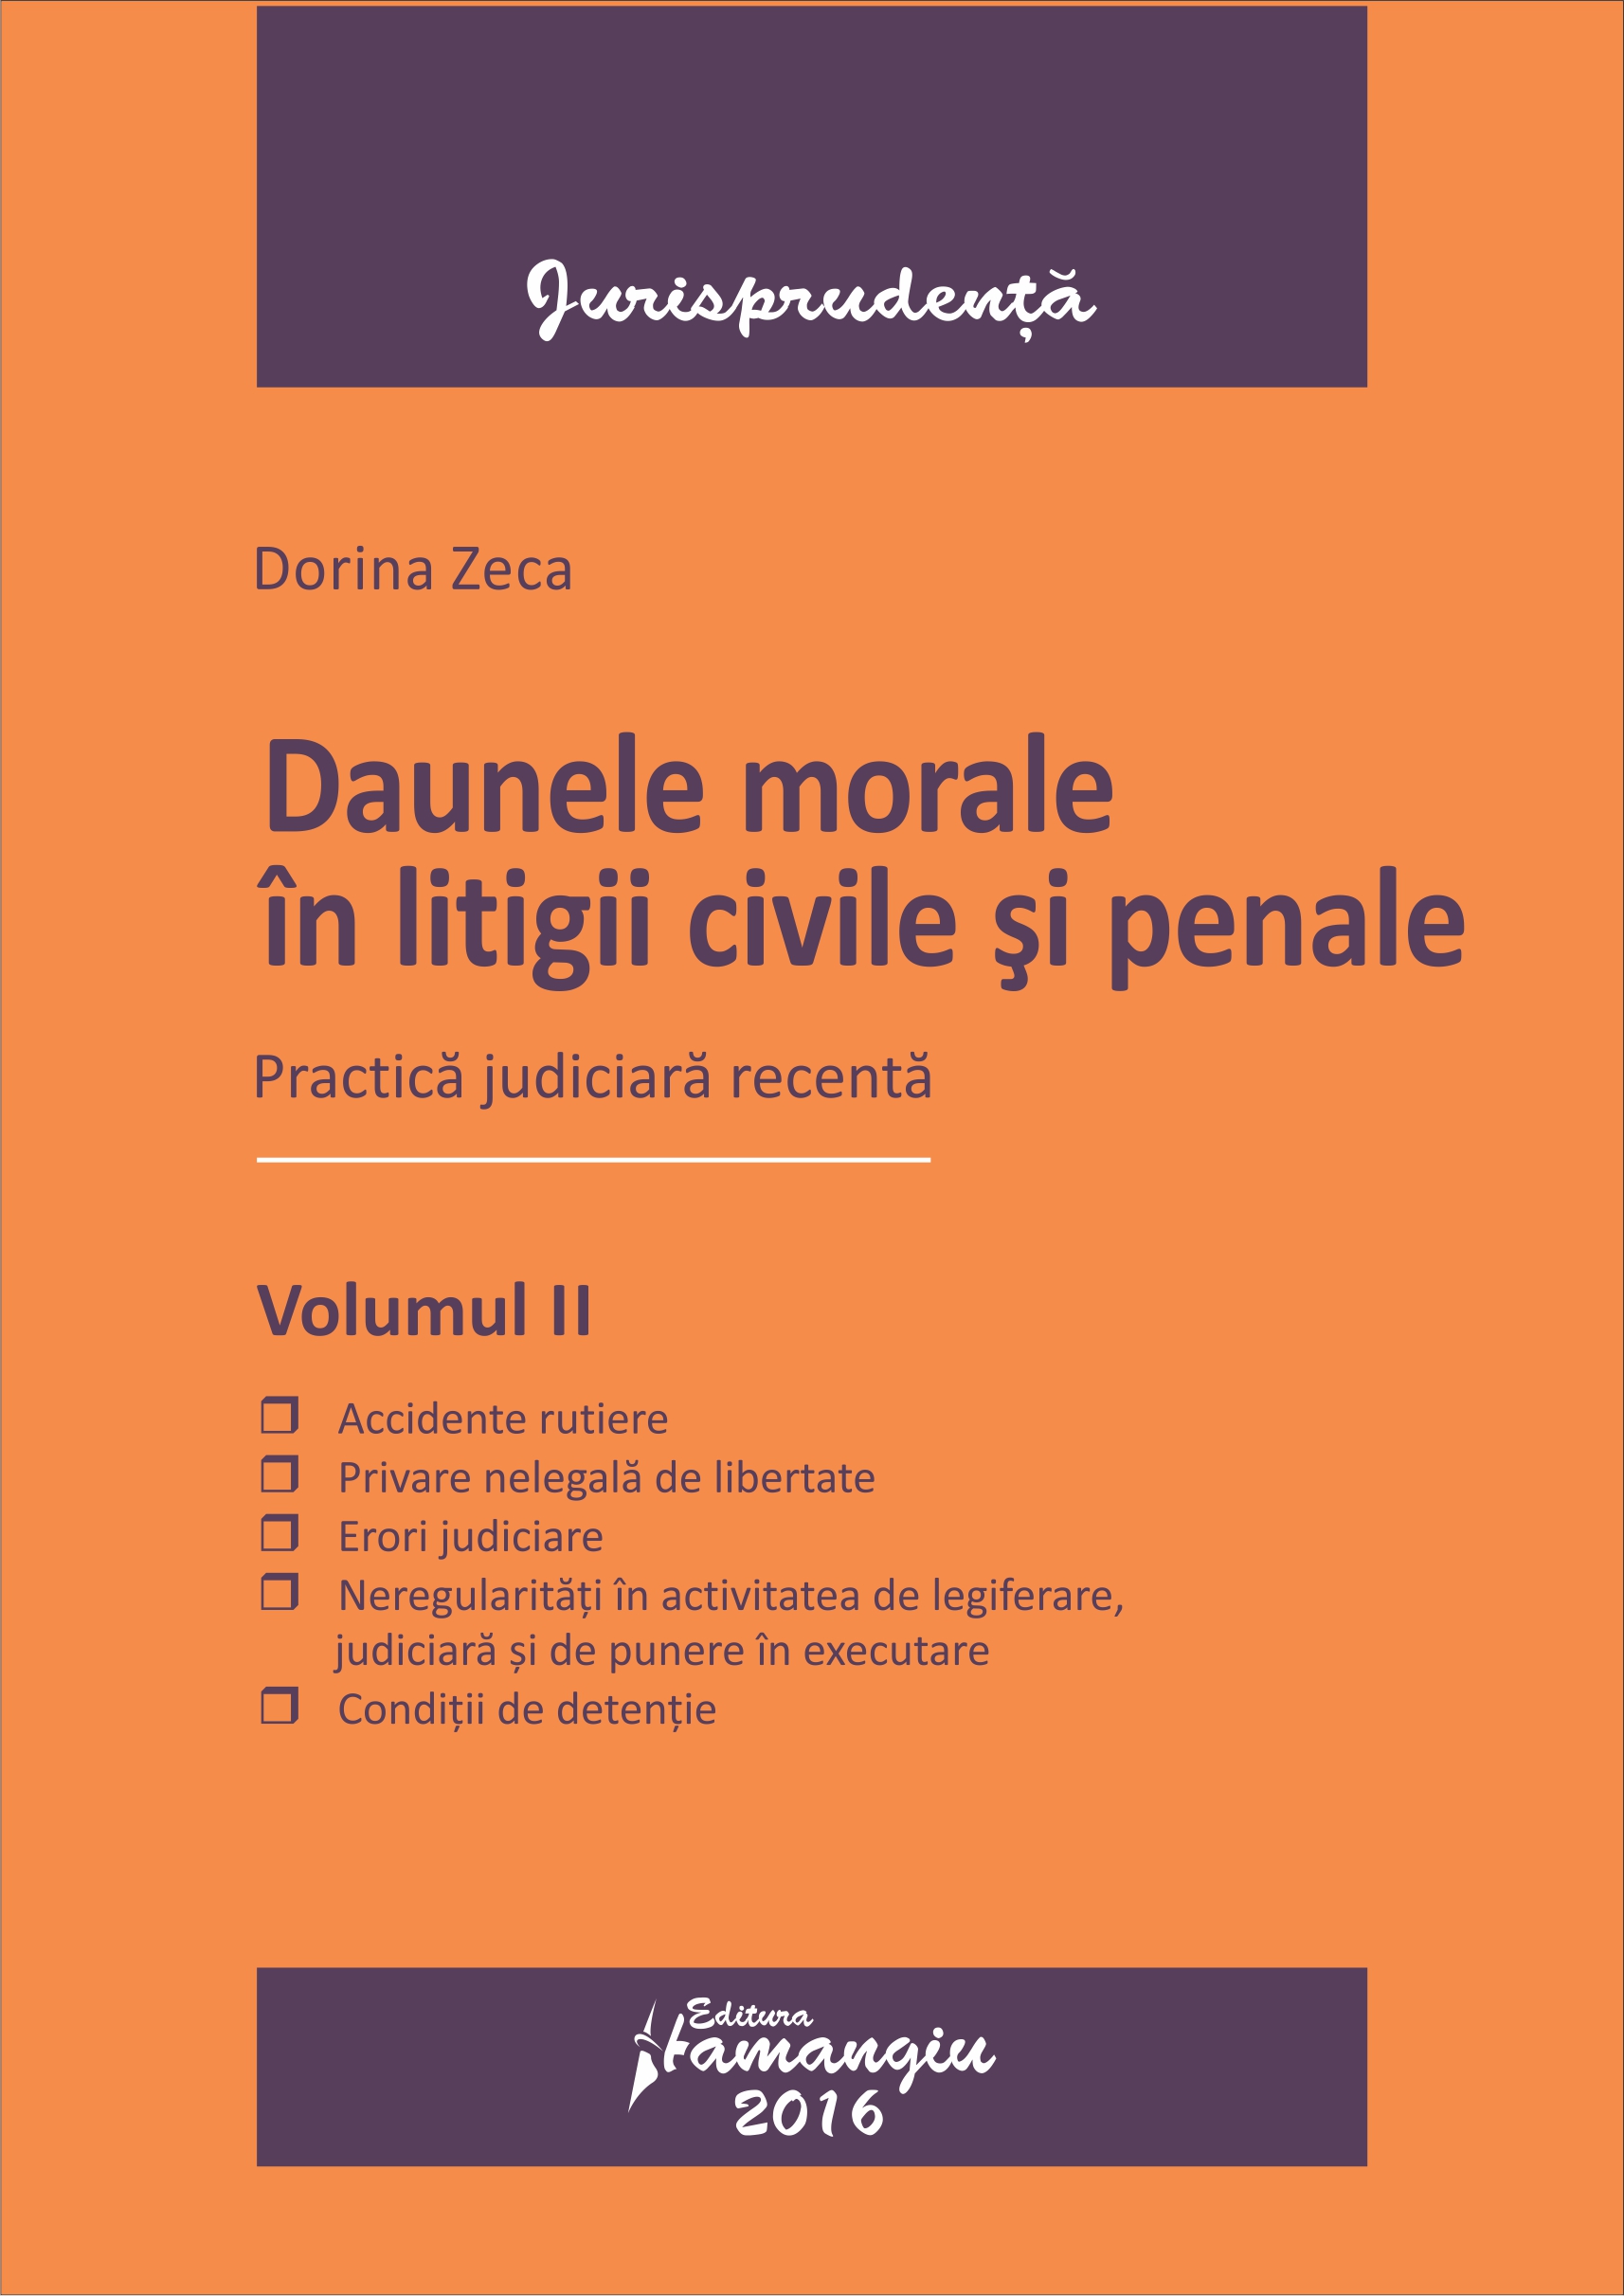 Daunele morale in litigii civile si penale vol.2 - Dorina Zeca